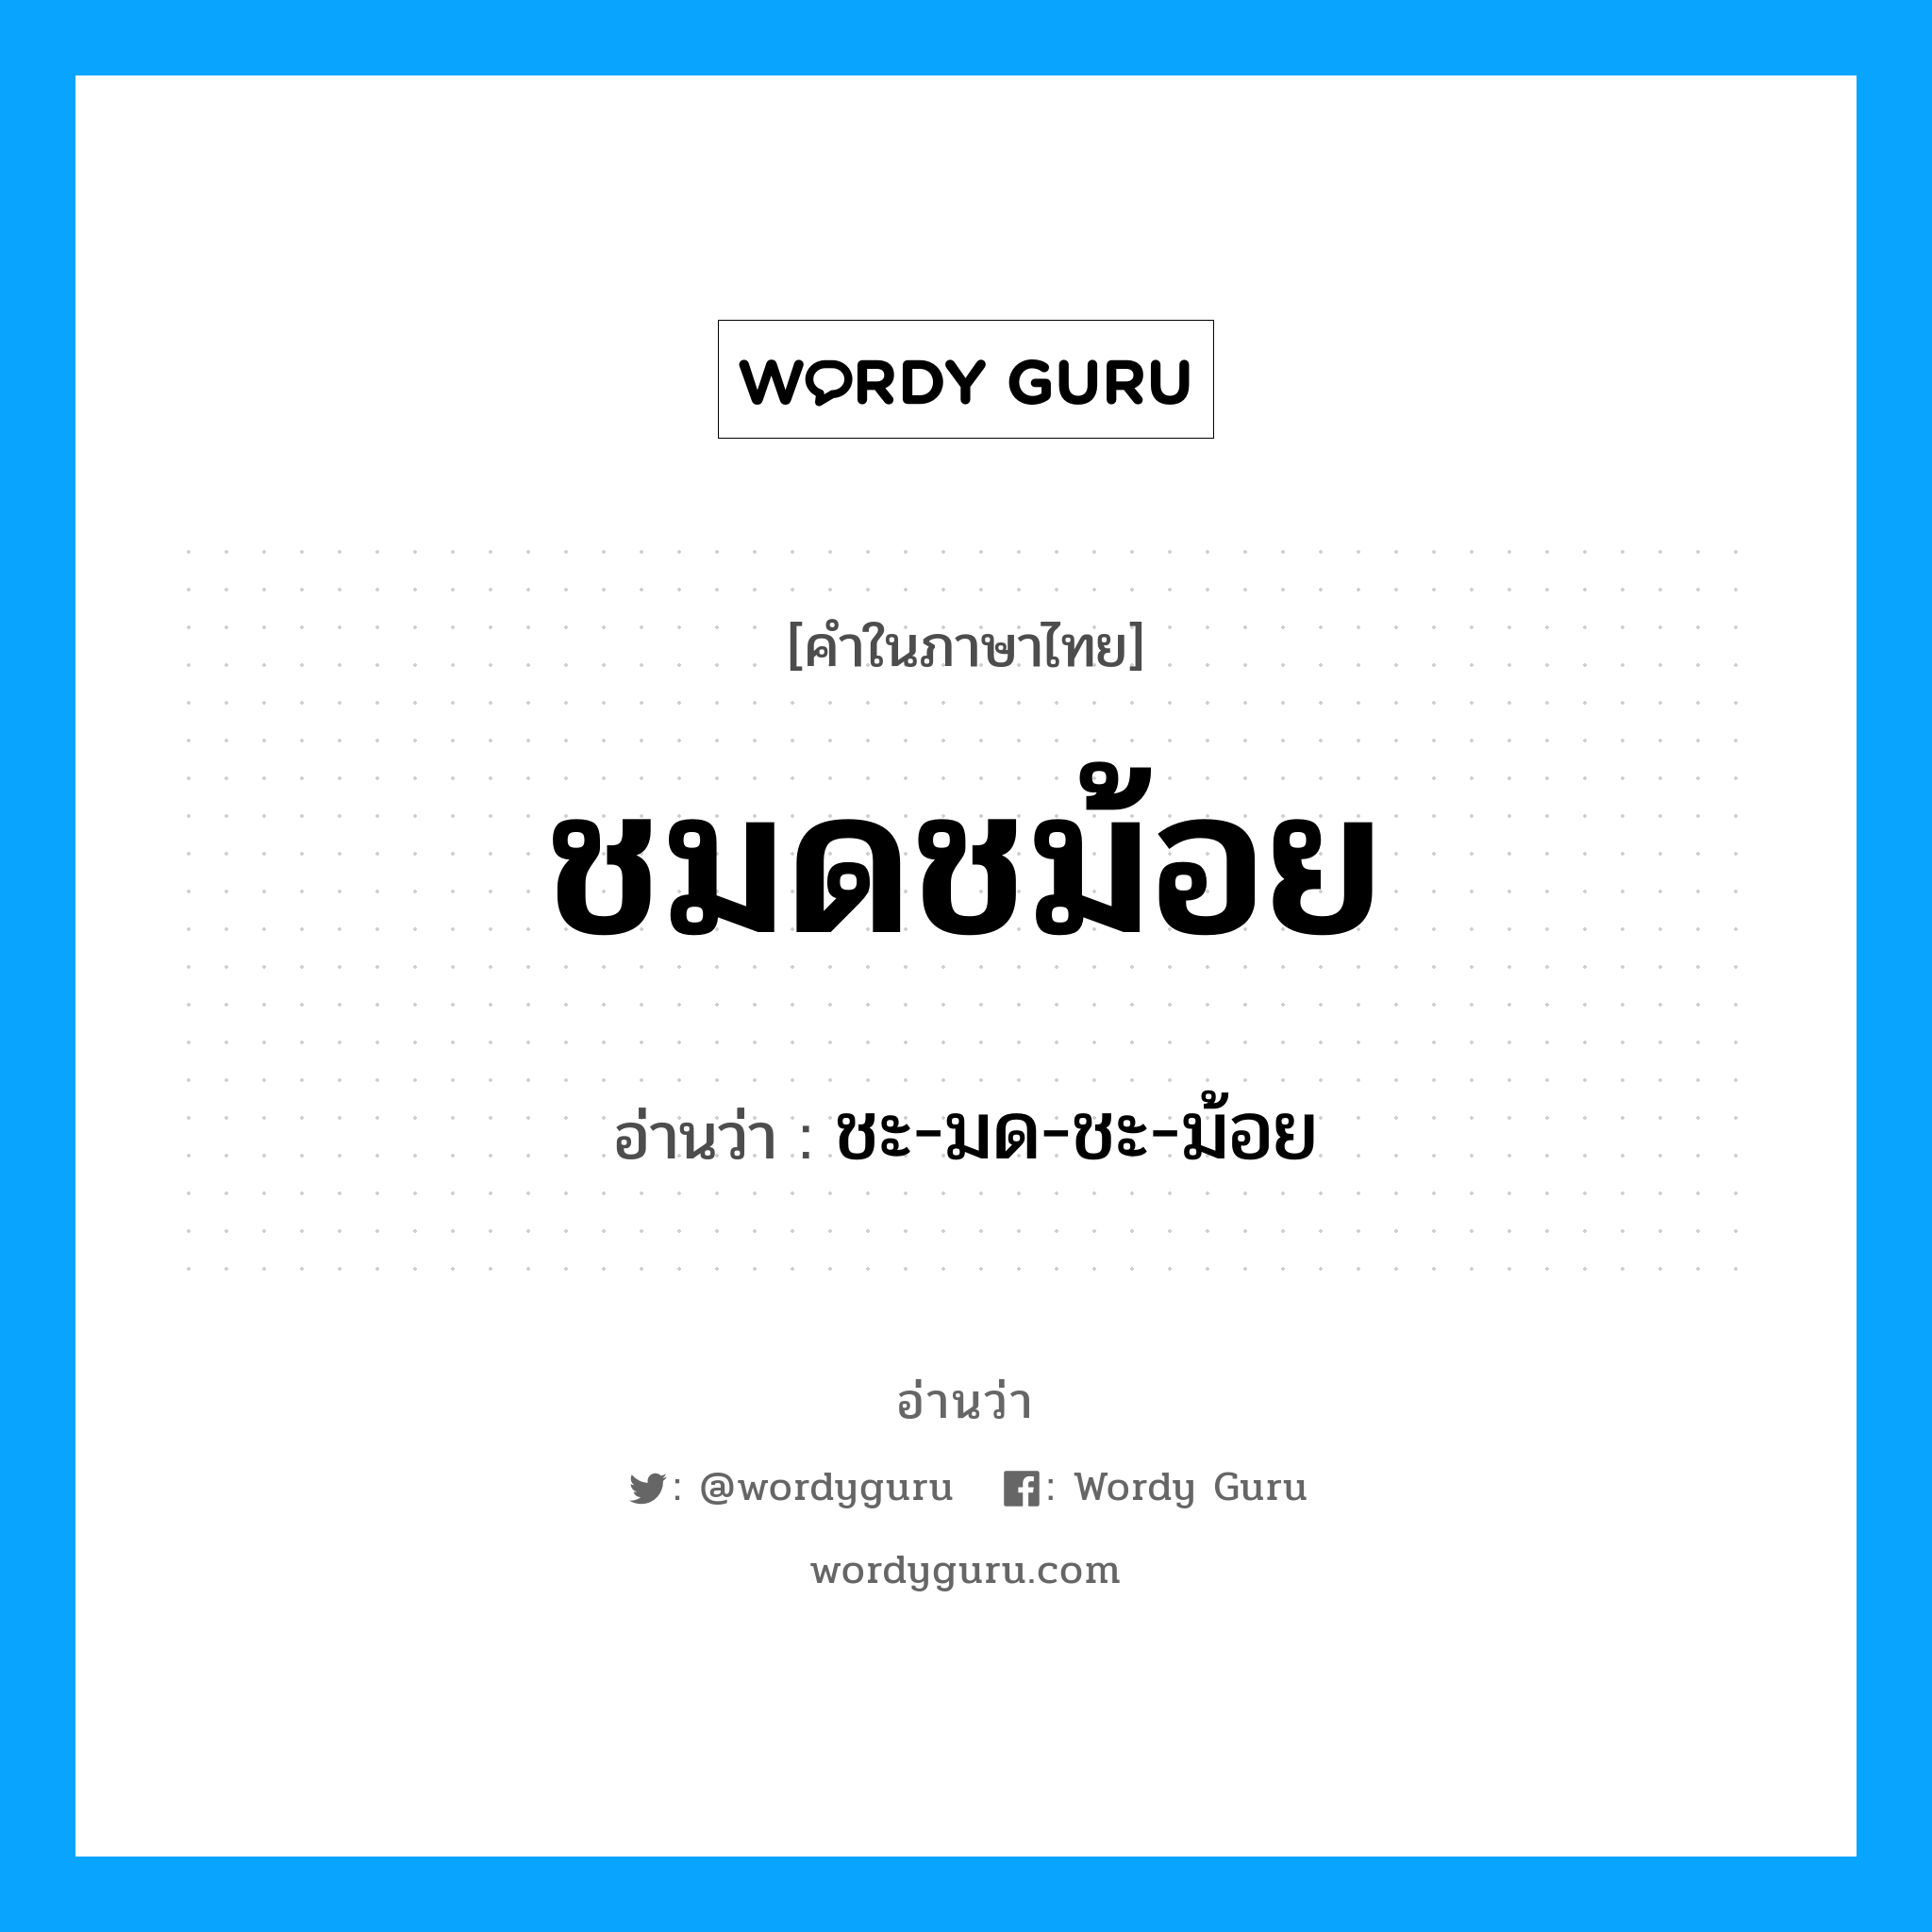 ชะ-มด-ชะ-ม้อย เป็นคำอ่านของคำไหน?, คำในภาษาไทย ชะ-มด-ชะ-ม้อย อ่านว่า ชมดชม้อย